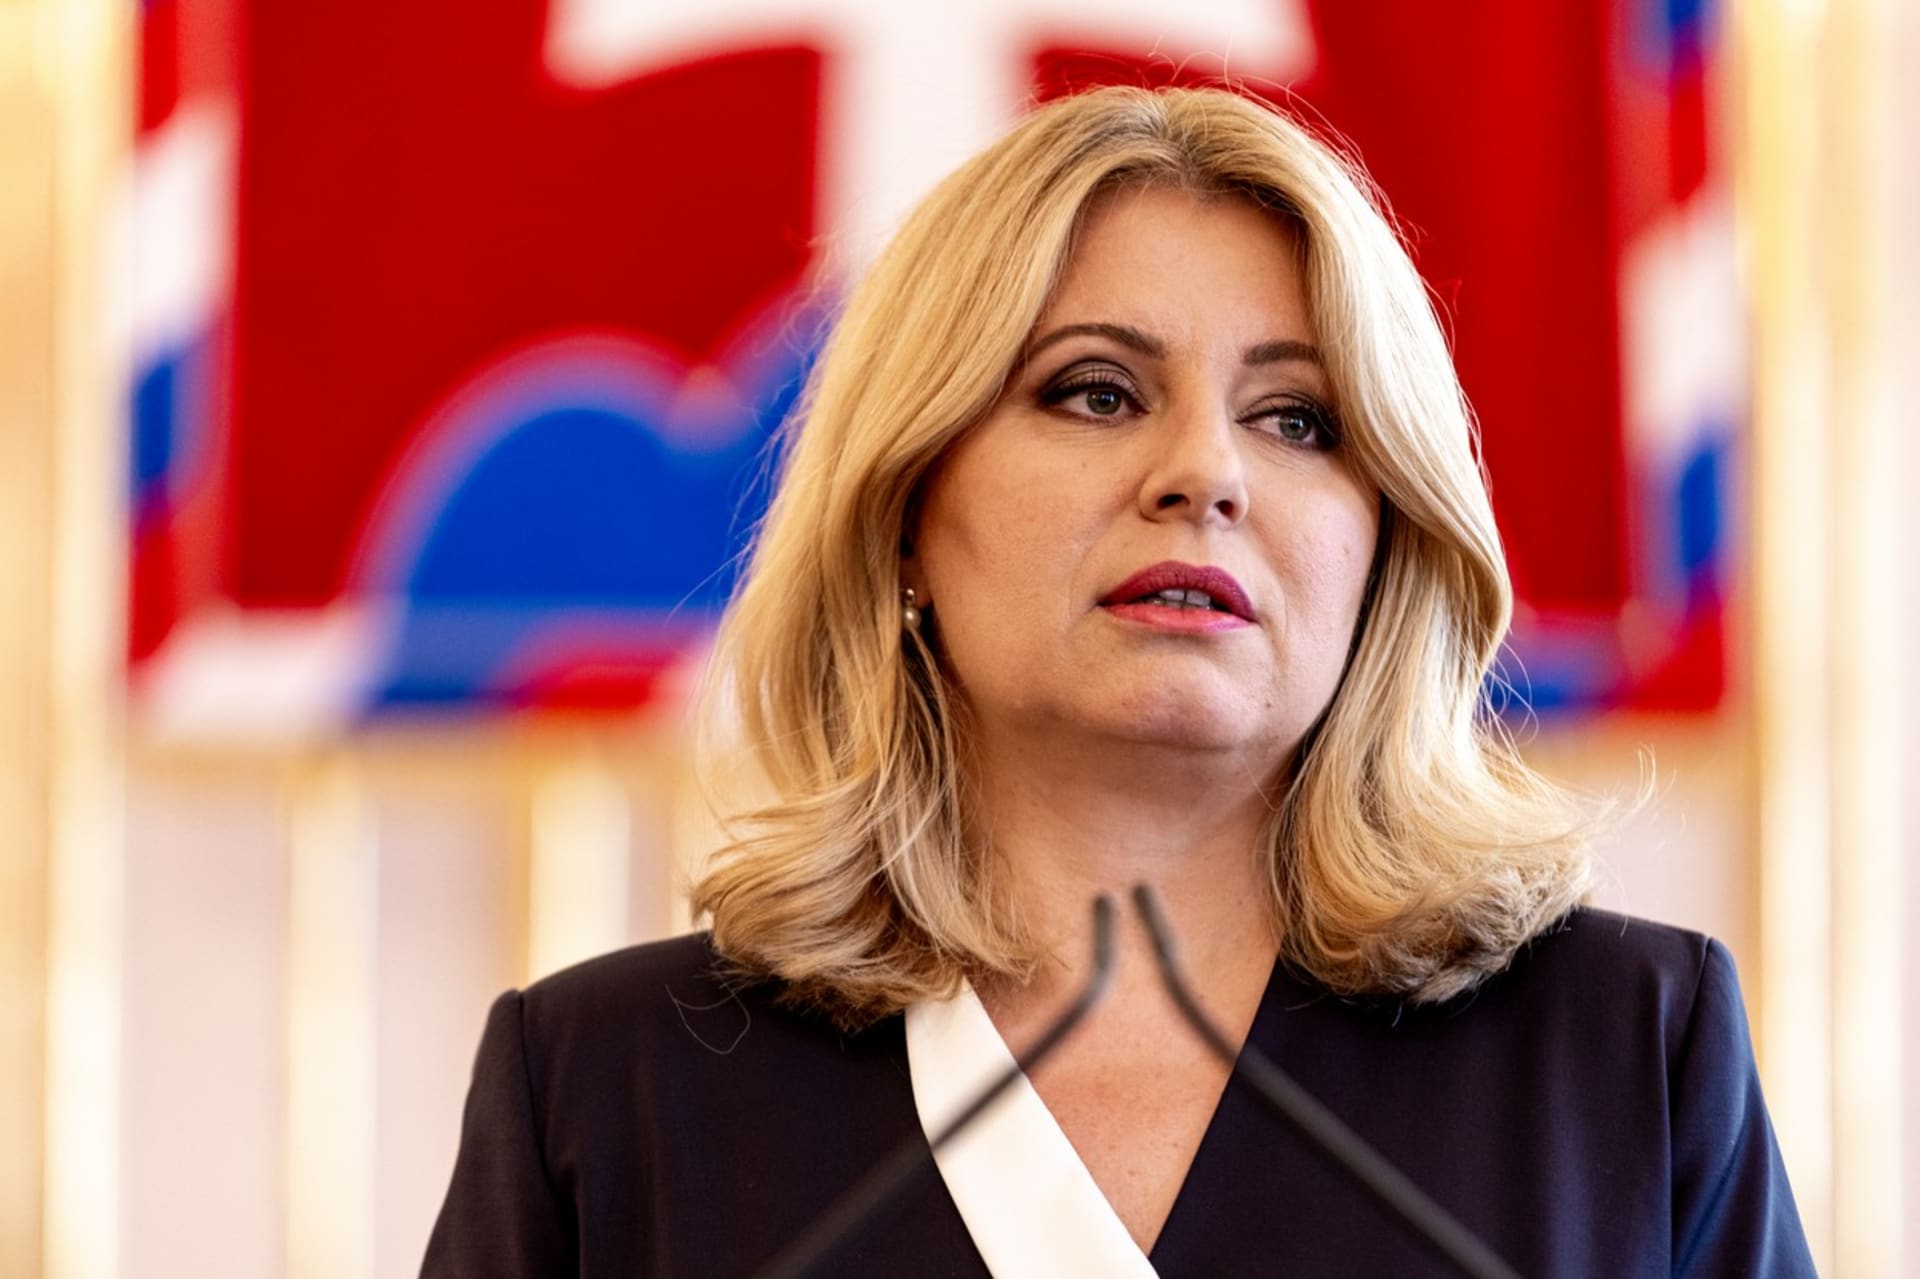 Slovenská prezidentka Zuzana Čaputová uvedla, že se bude snažit spolupráci mezi zeměmi upevňovat.